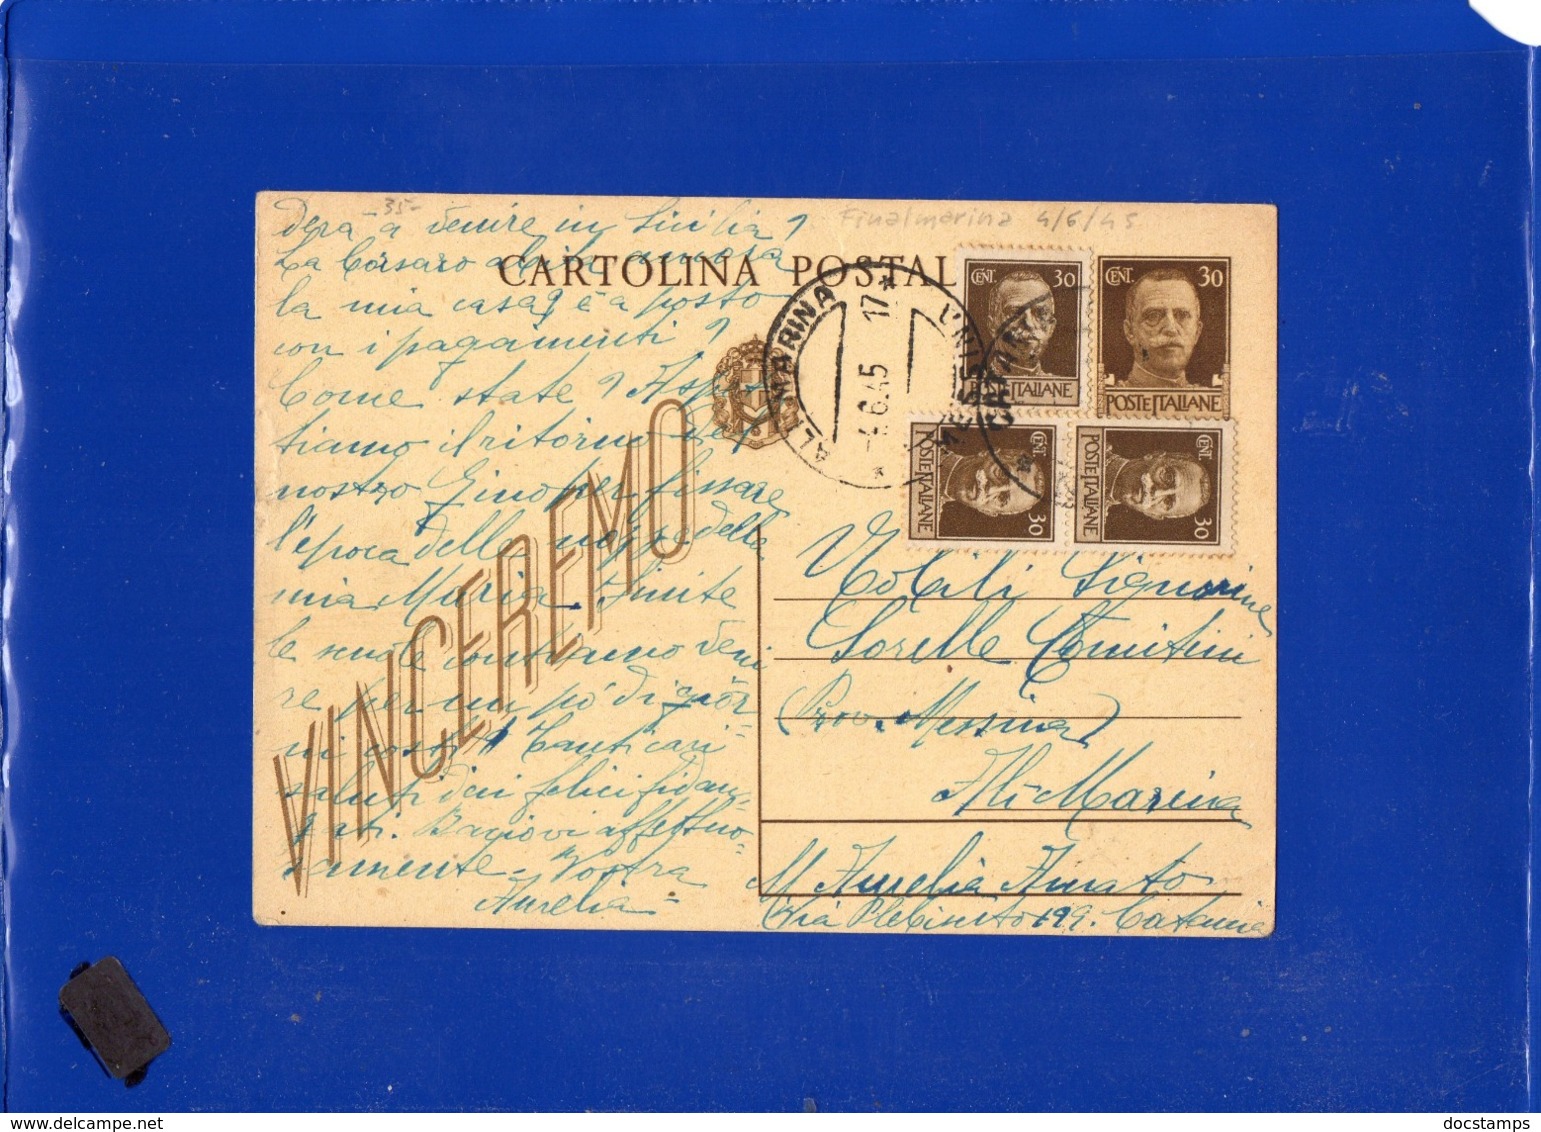 ##(DAN1910)-30-5-1945-Cartolina Postale Vinceremo Cent 30 Da Catania Per Ali Marina (Messina), In Tariffa L.1,20 - Storia Postale